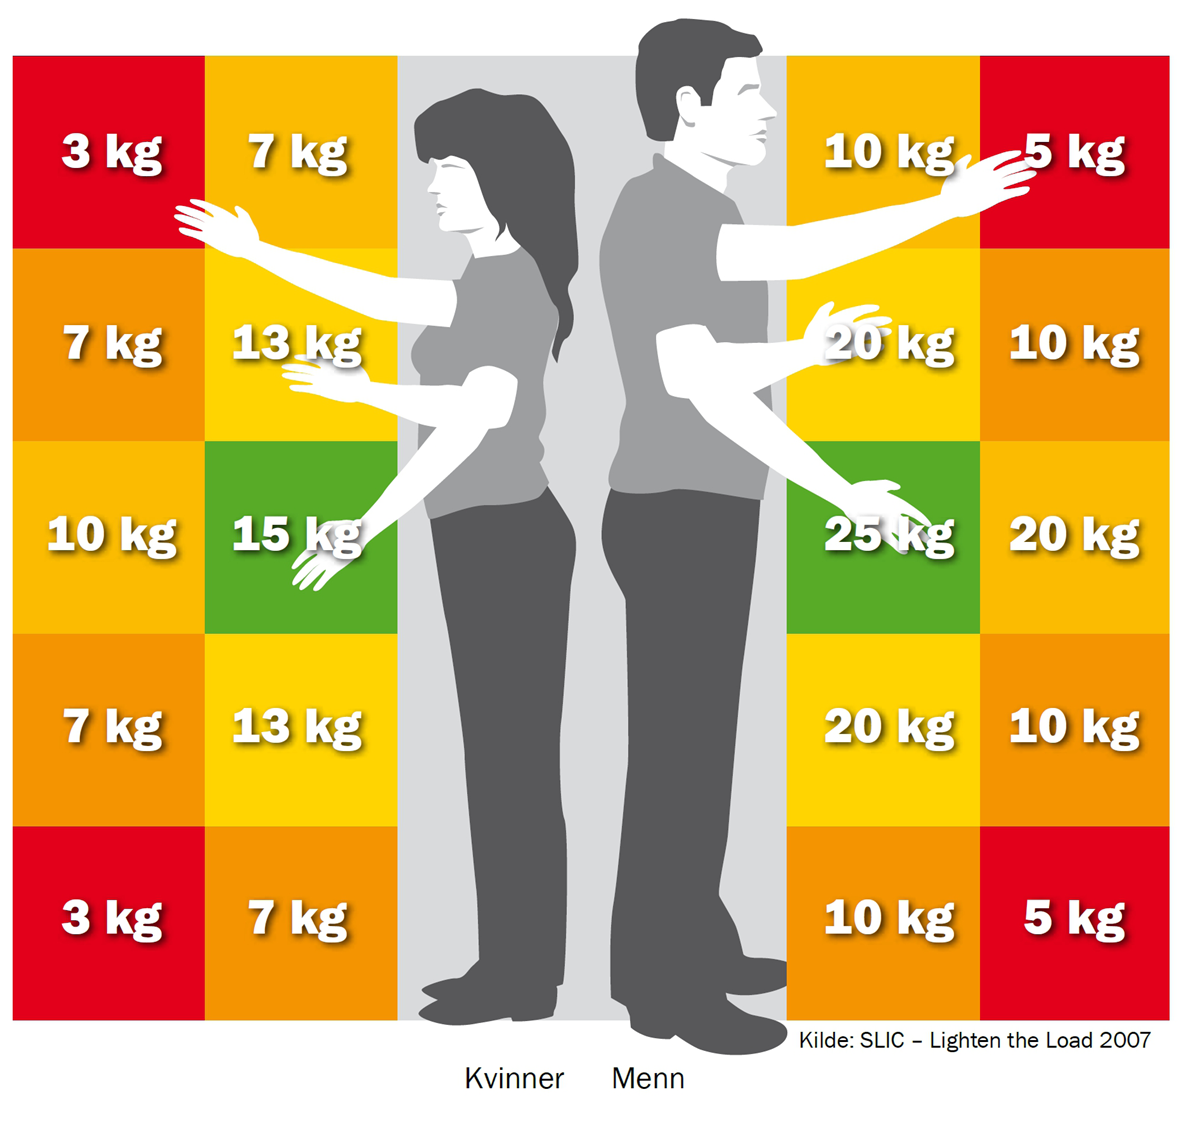 Forskjellige vektgrenser for kvinner og menn ut fra armstilling og avstand fra kroppen